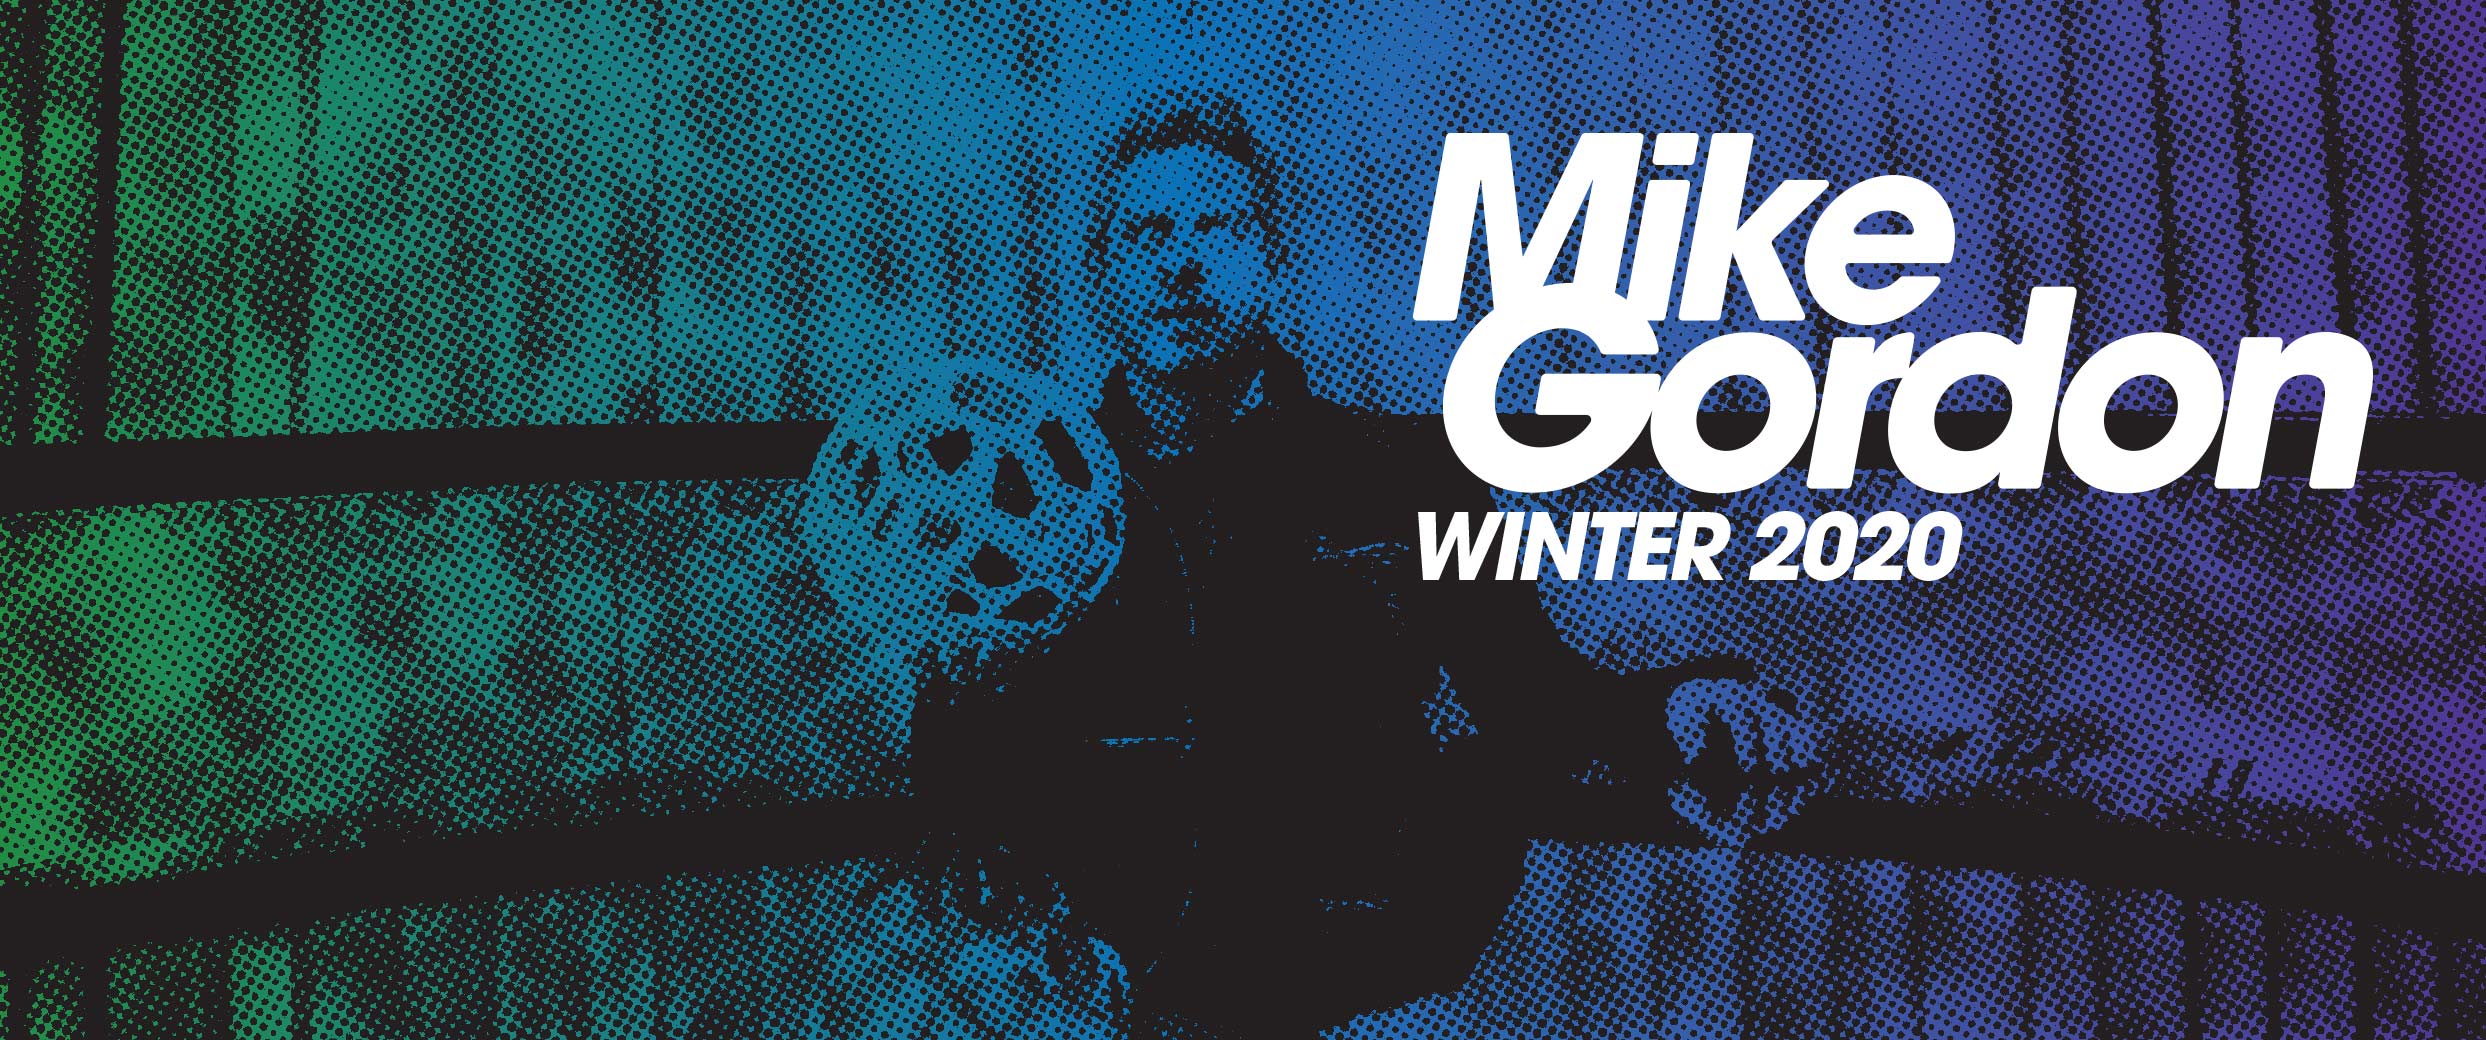 Mike Gordon 2020 Winter Tour Begins Next Week